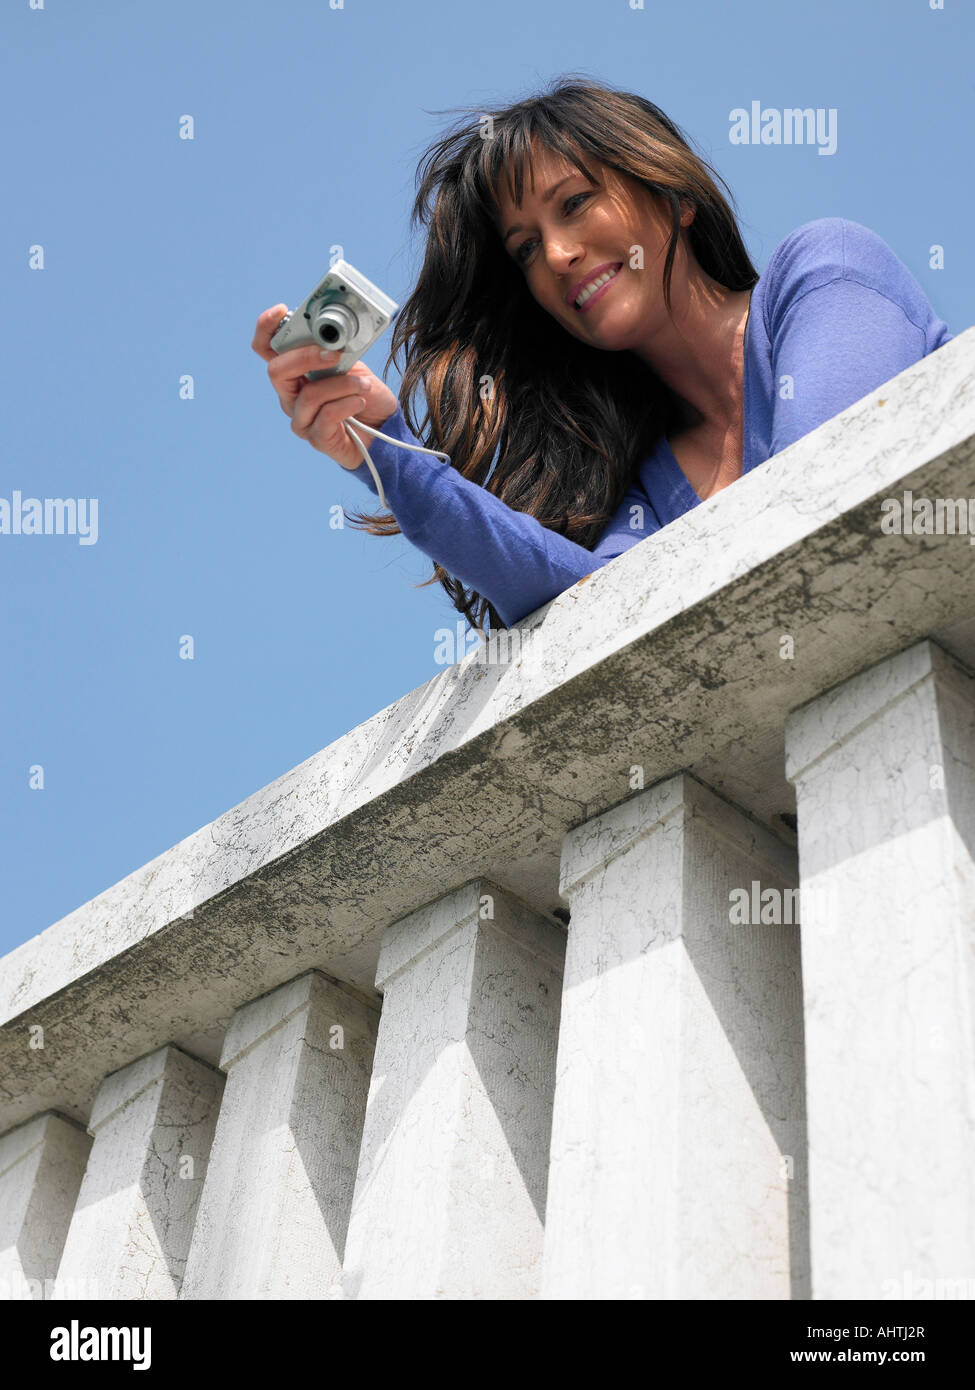 Donna sul balcone prendendo fotografie con una fotocamera digitale. Venezia, Italia. Foto Stock